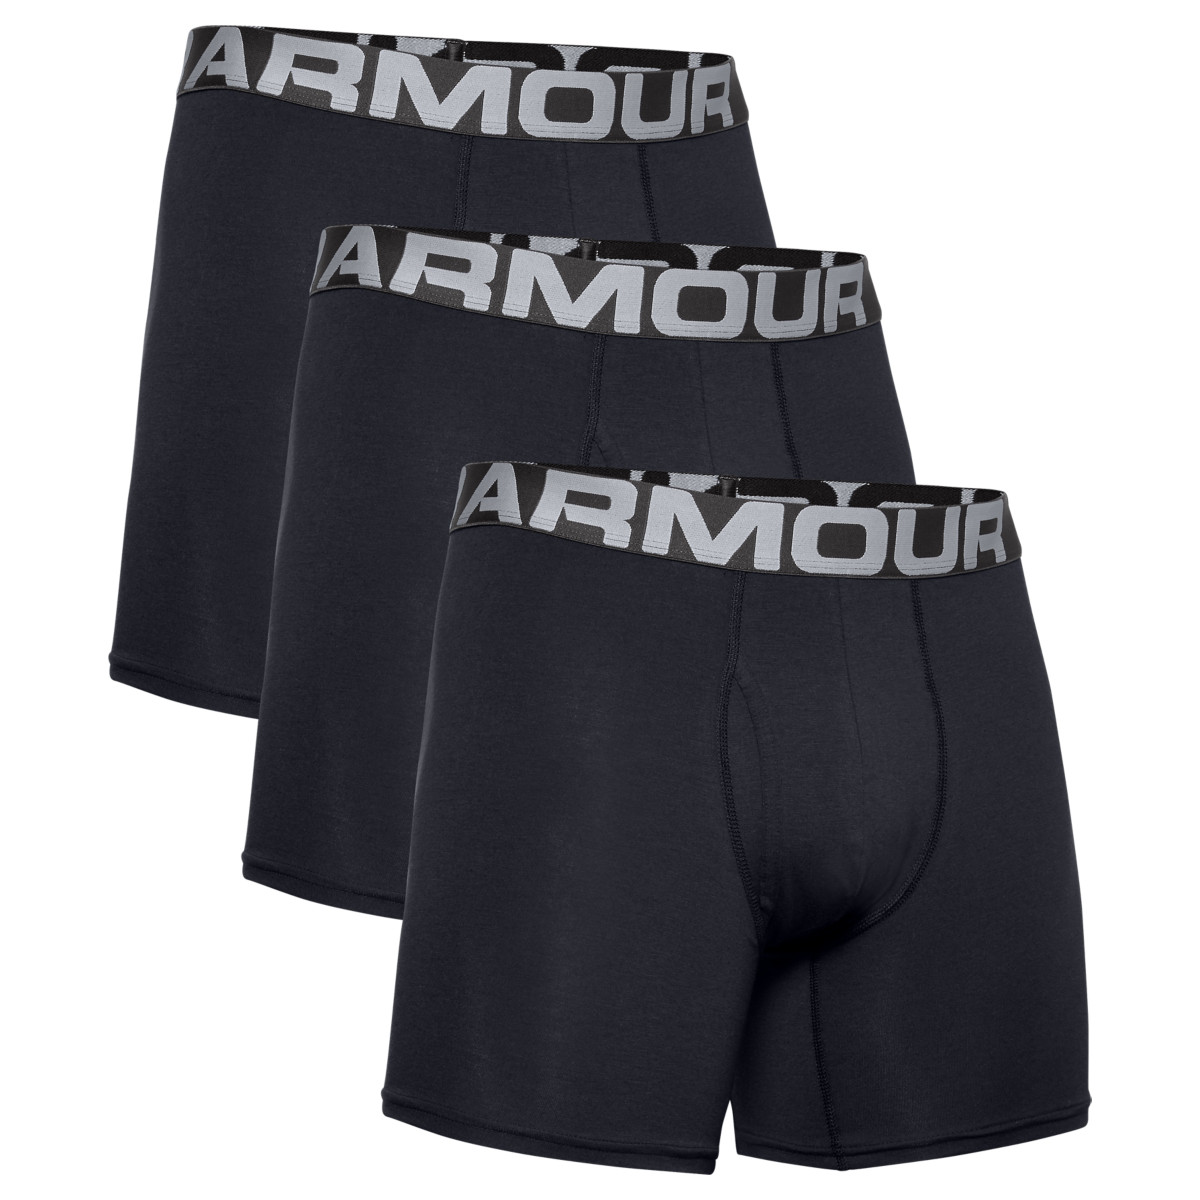 Produktbild von Under Armour Charged Cotton® Boxerjock® (15 cm) Herren – 3-er-Pack - Schwarz/Schwarz/Schwarz